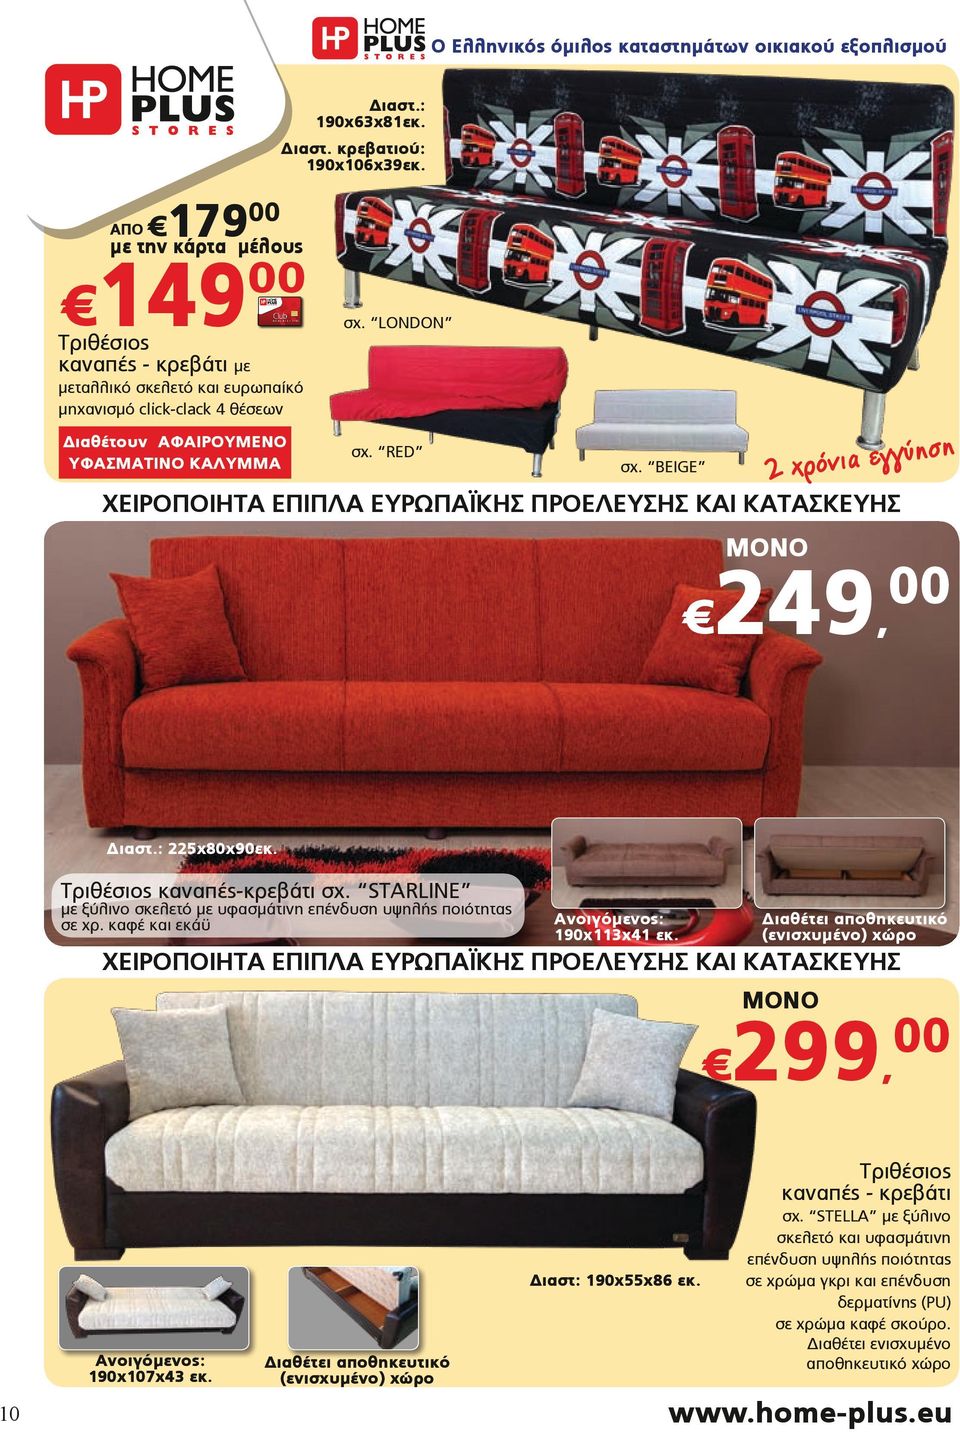 Τριθέσιος καναπές-κρεβάτι σχ. STARLINE με ξύλινο σκελετό με υφασμάτινη επένδυση υψηλής ποιότητας σε χρ. καφέ και εκάϋ Ανοιγόμενος: 190x113x41 εκ.